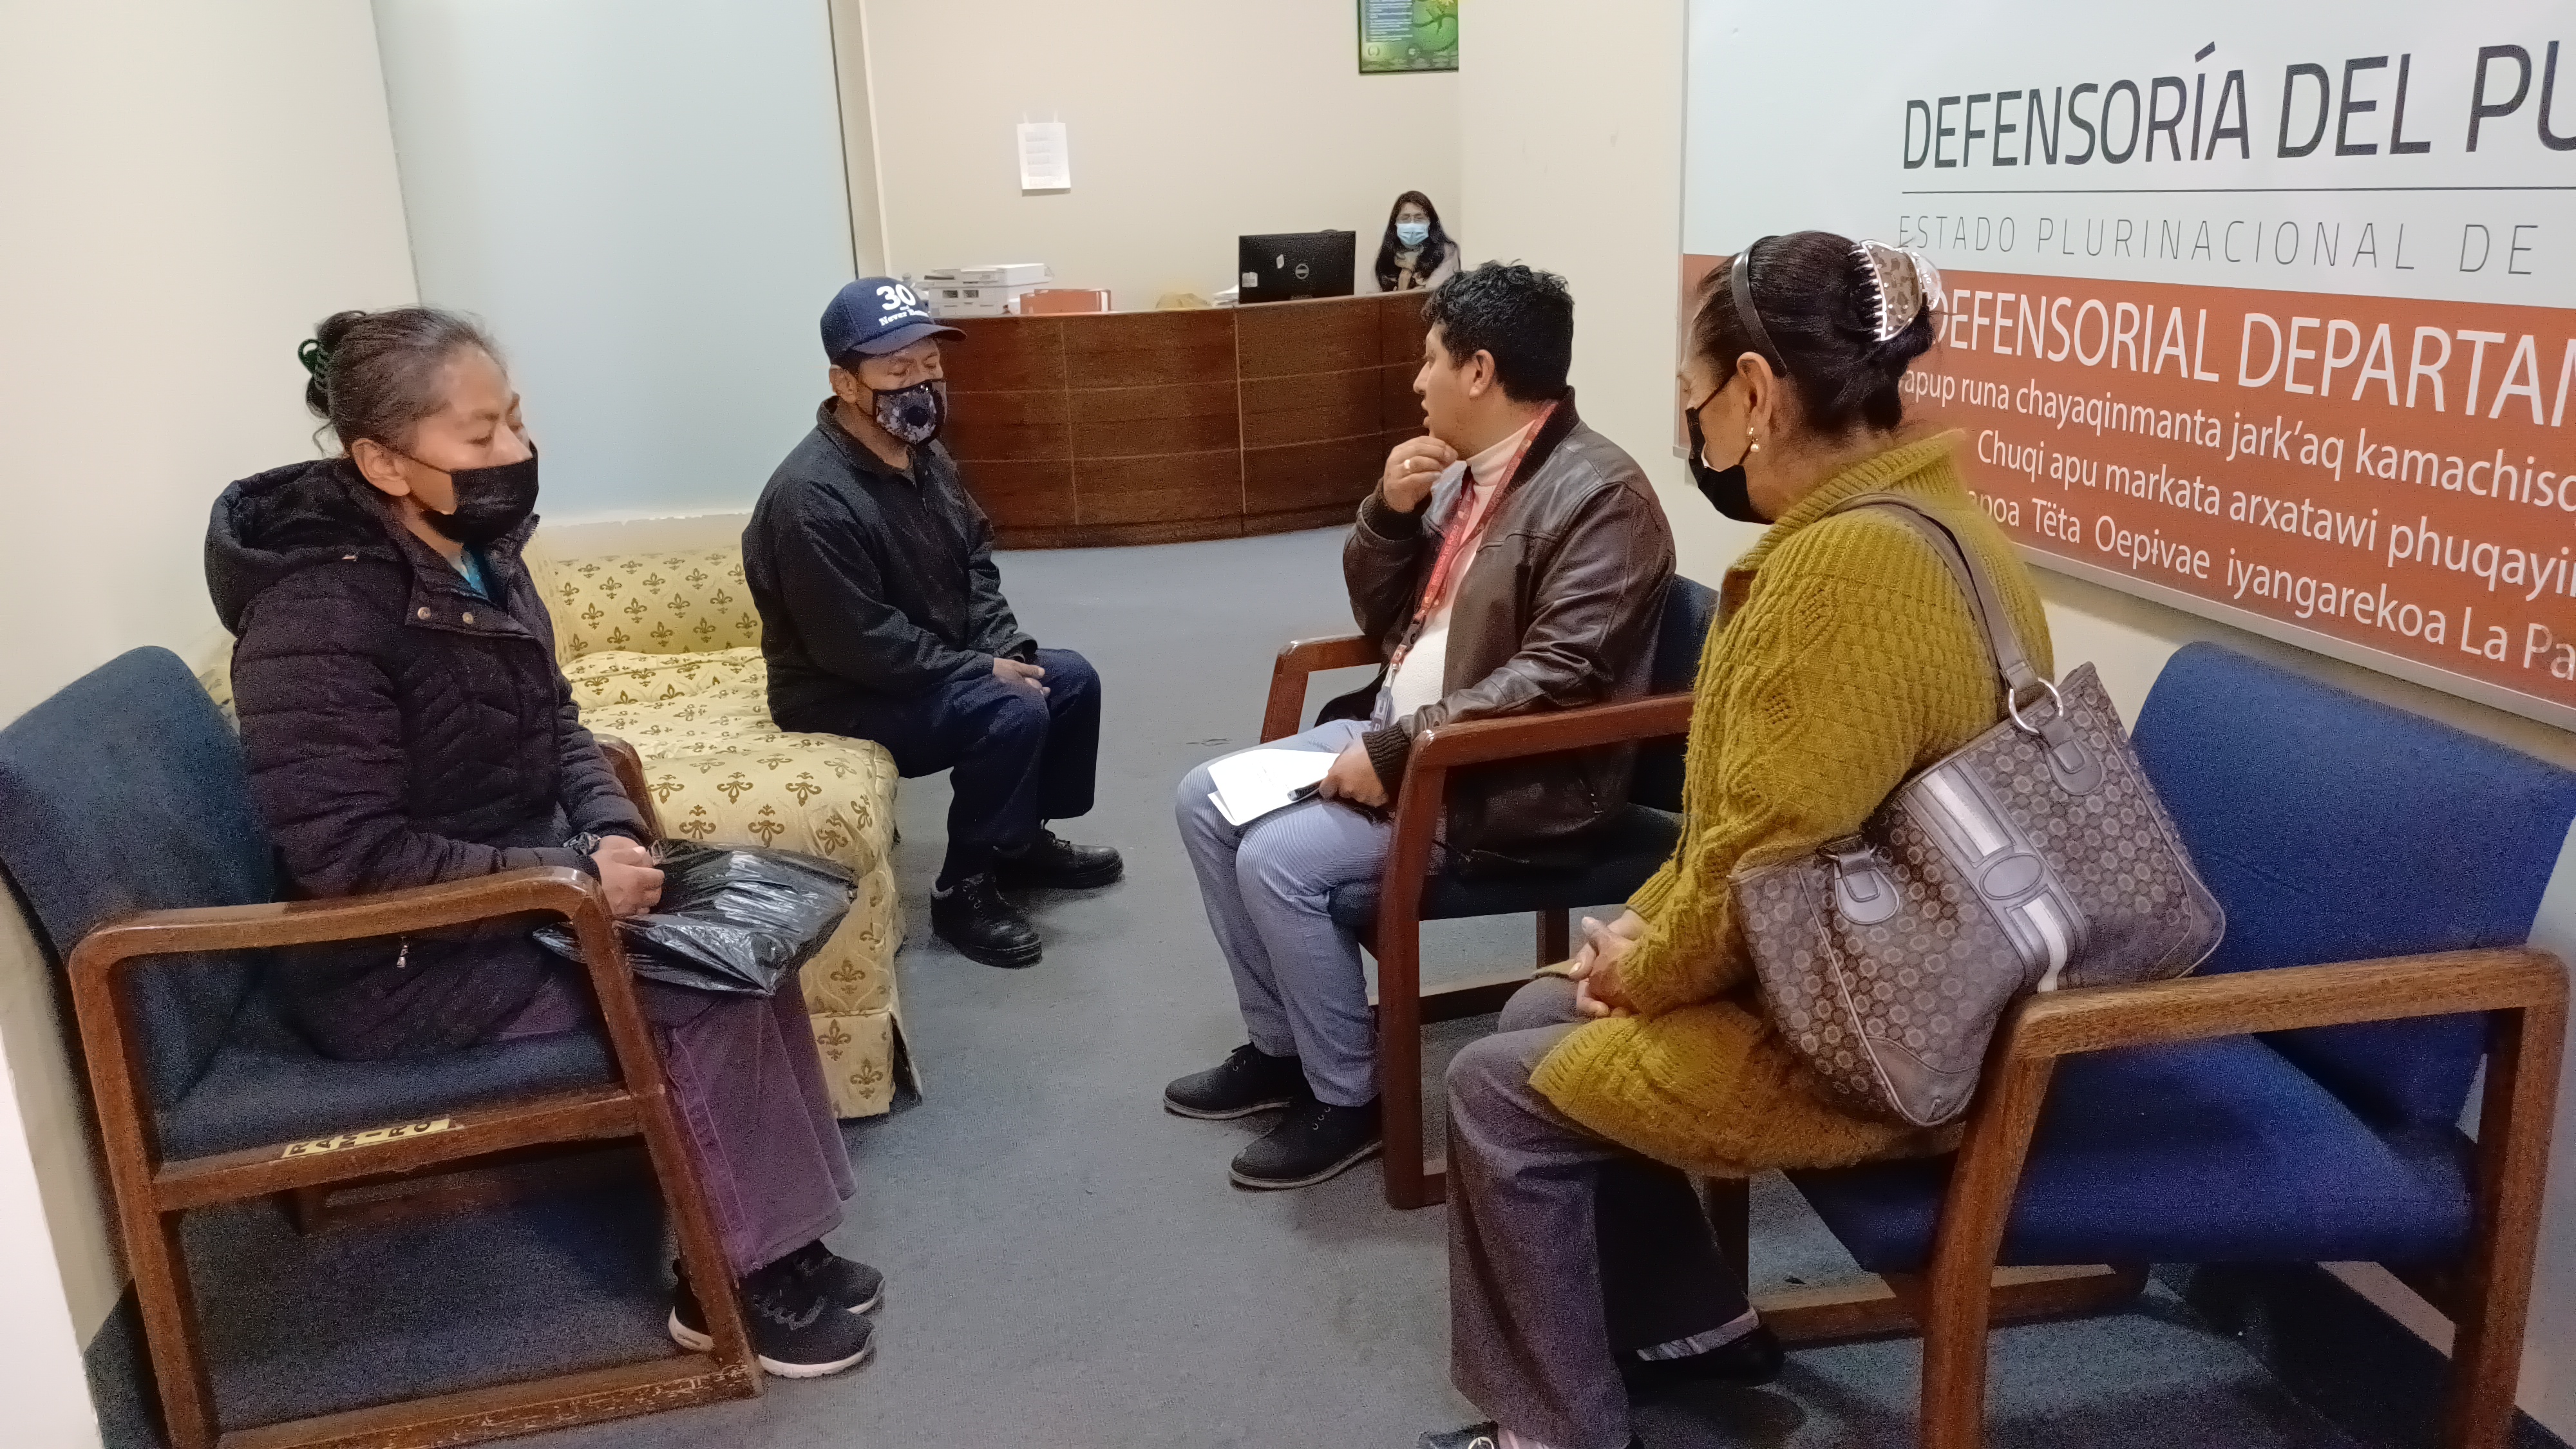 La Paz: Defensoría del Pueblo hace incidencia ante un Tribunal de Sentencia para que una persona con discapacidad psíquica sea absuelta de pena y culpa